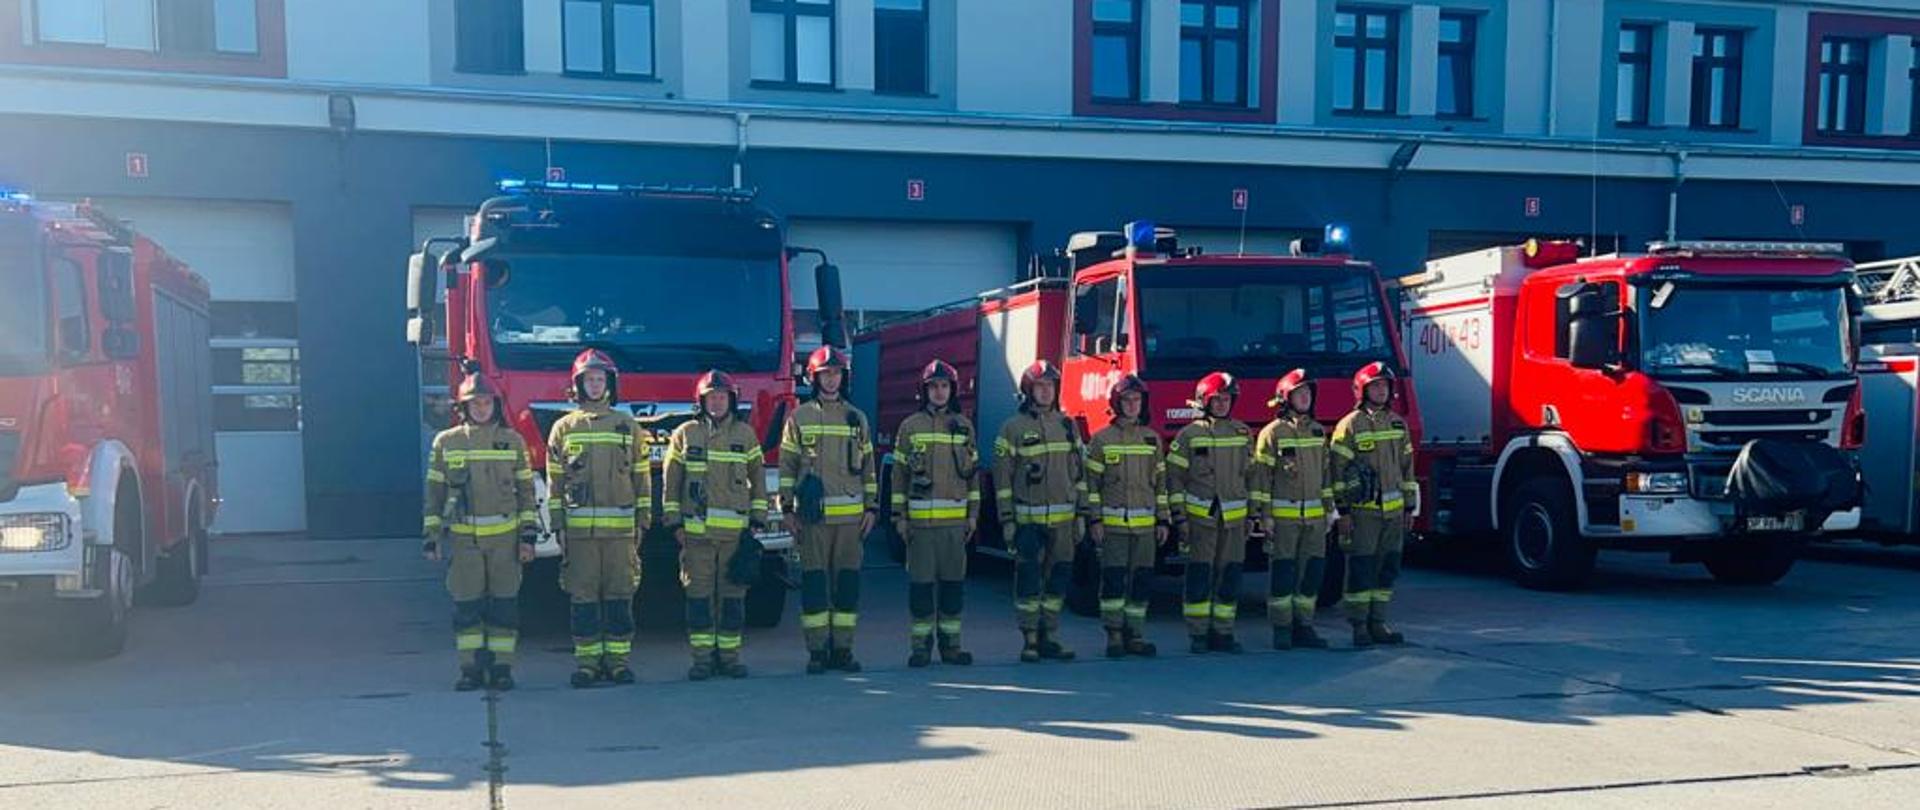 Minuta ciszy dla zmarłego strażaka - zdjęcie przedstawia strażaków JRG Brzeg przed siedzibą jednostki, w tle samochody pożarnicze.